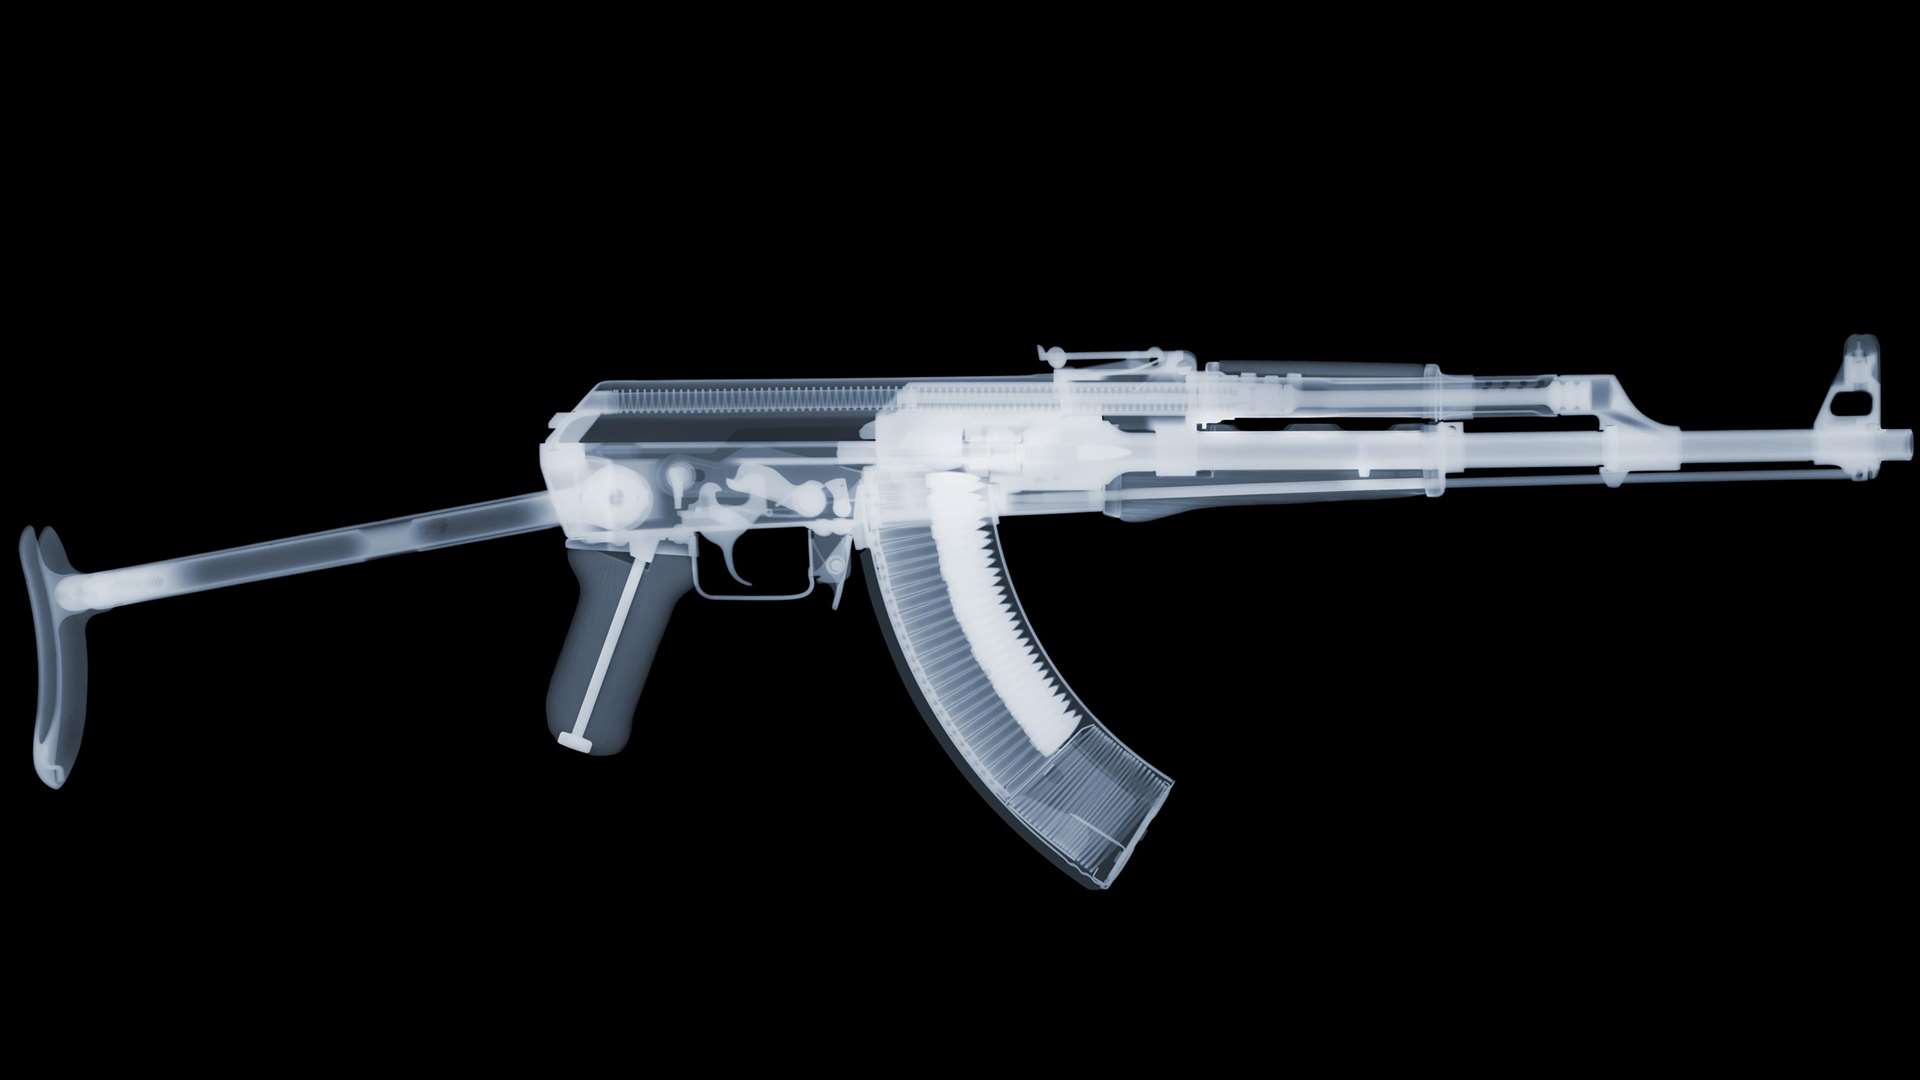 An AK-47, otherwise known as the Kalashnikov